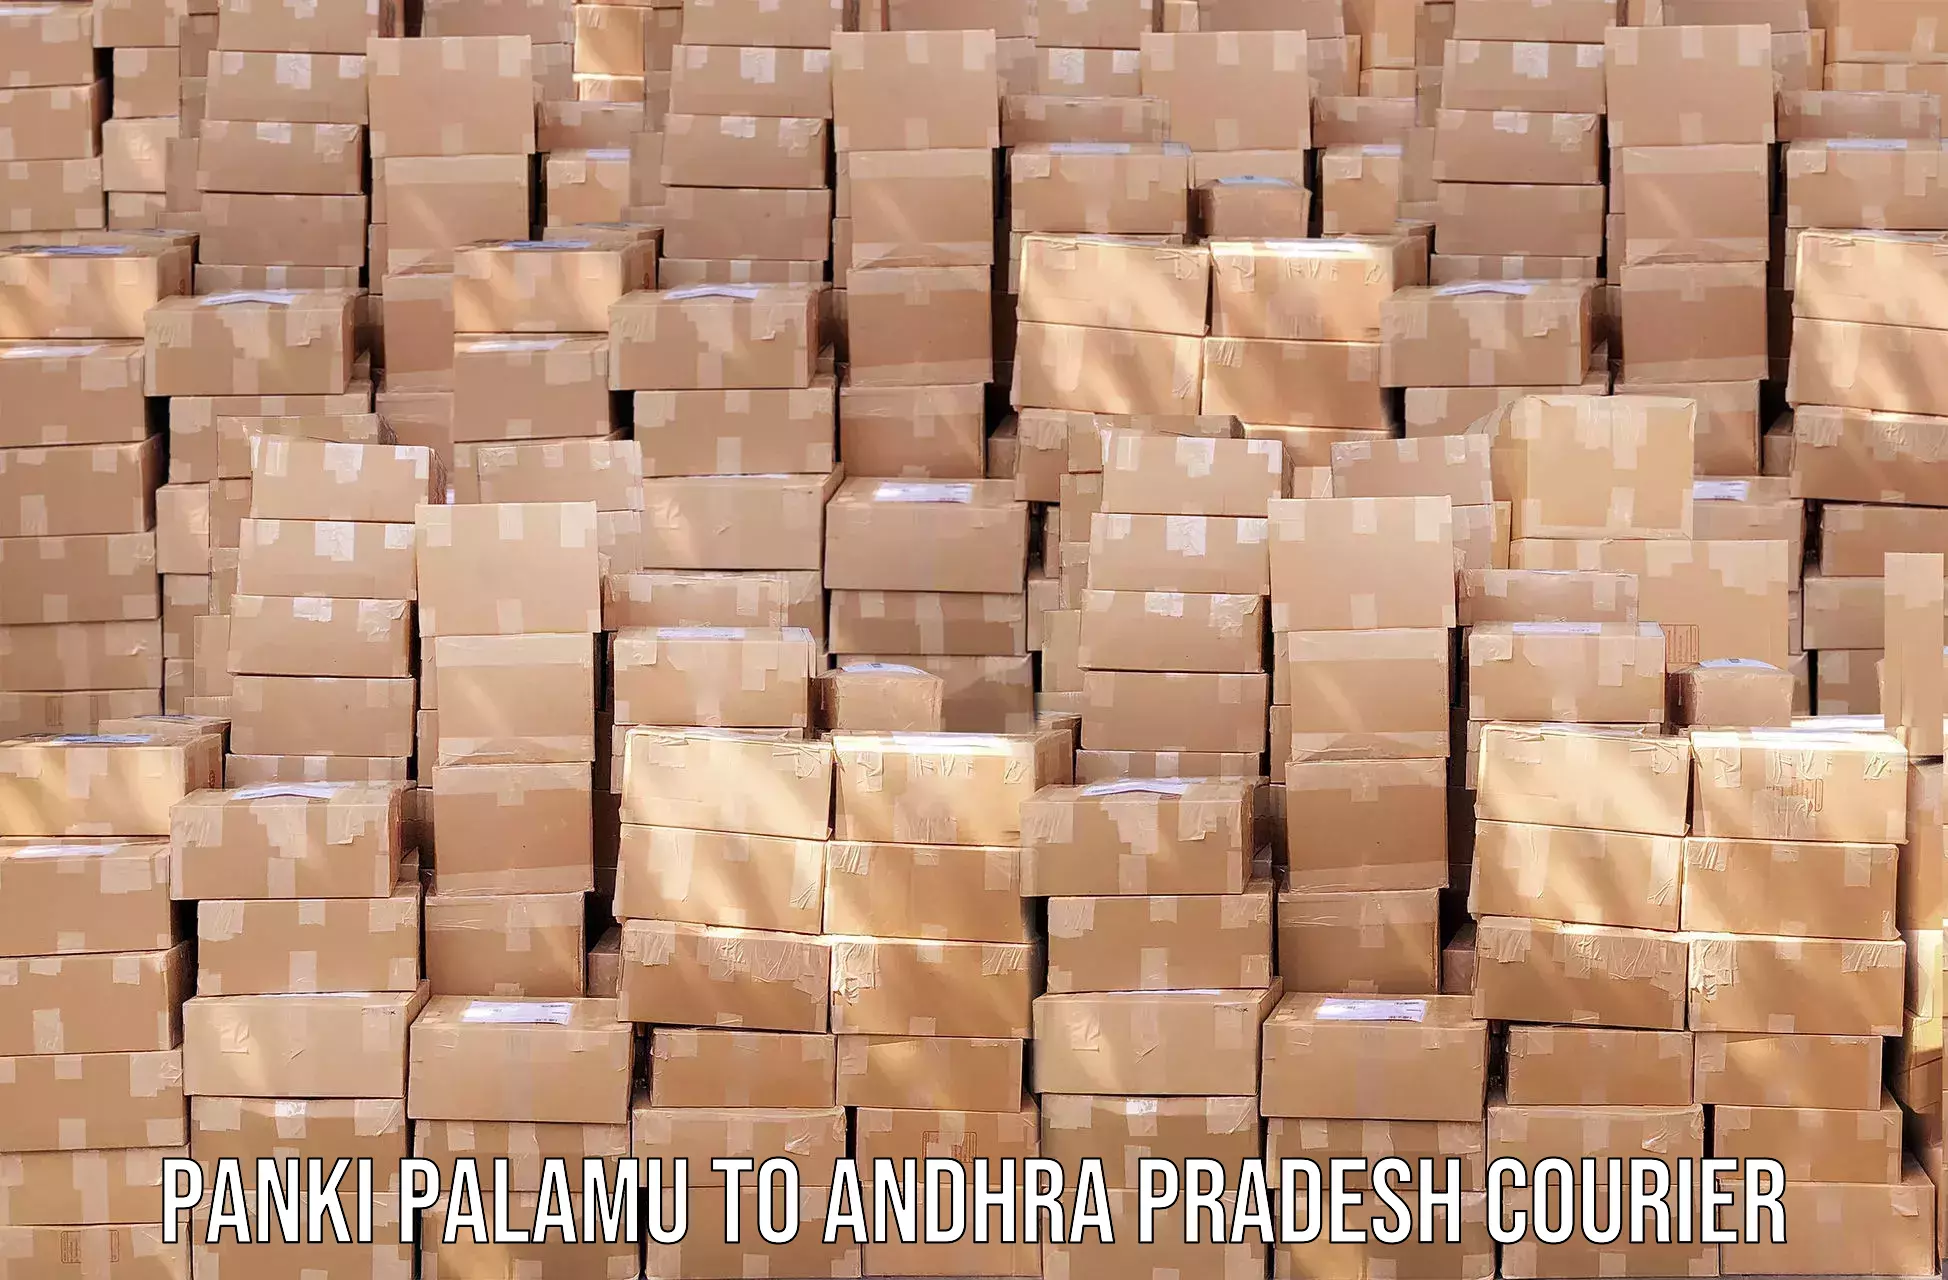 Local delivery service Panki Palamu to Andhra Pradesh